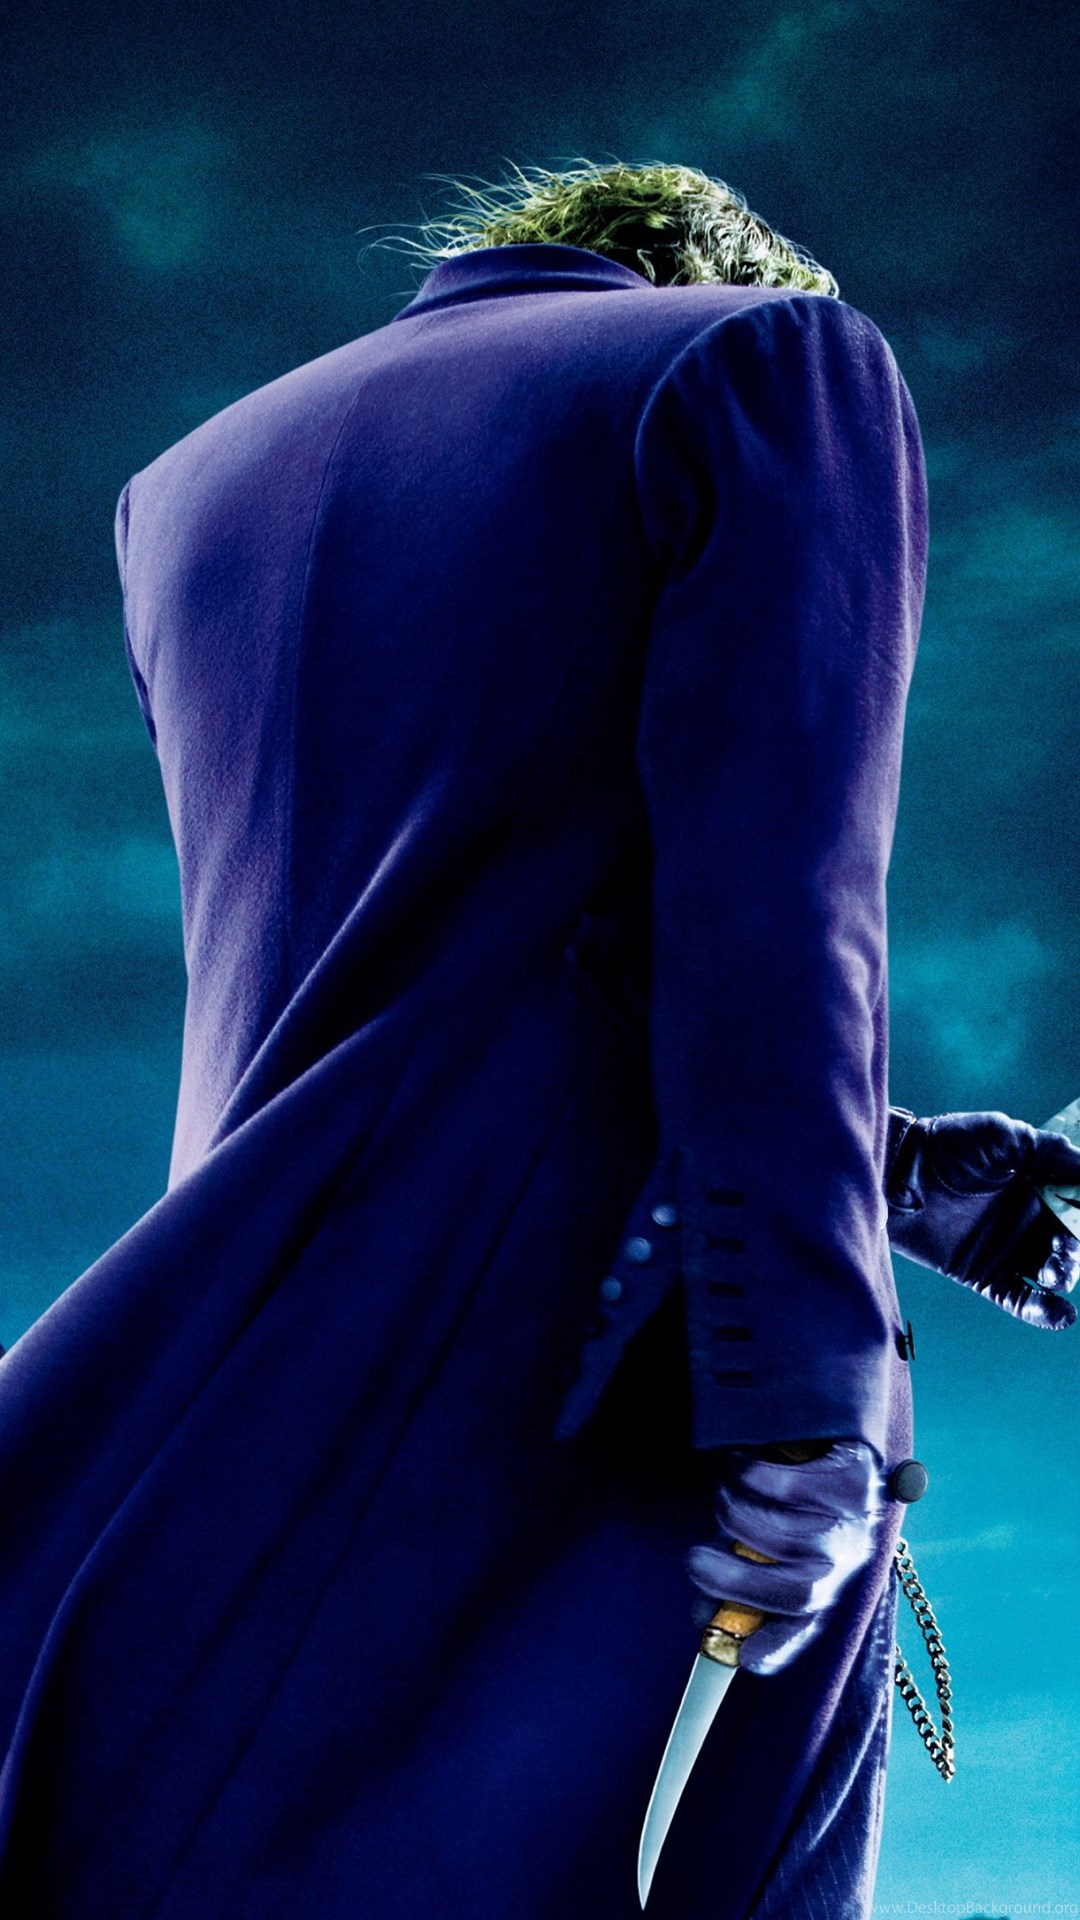 The Joker The Dark Knight HD Desktop Wallpapers : High ...